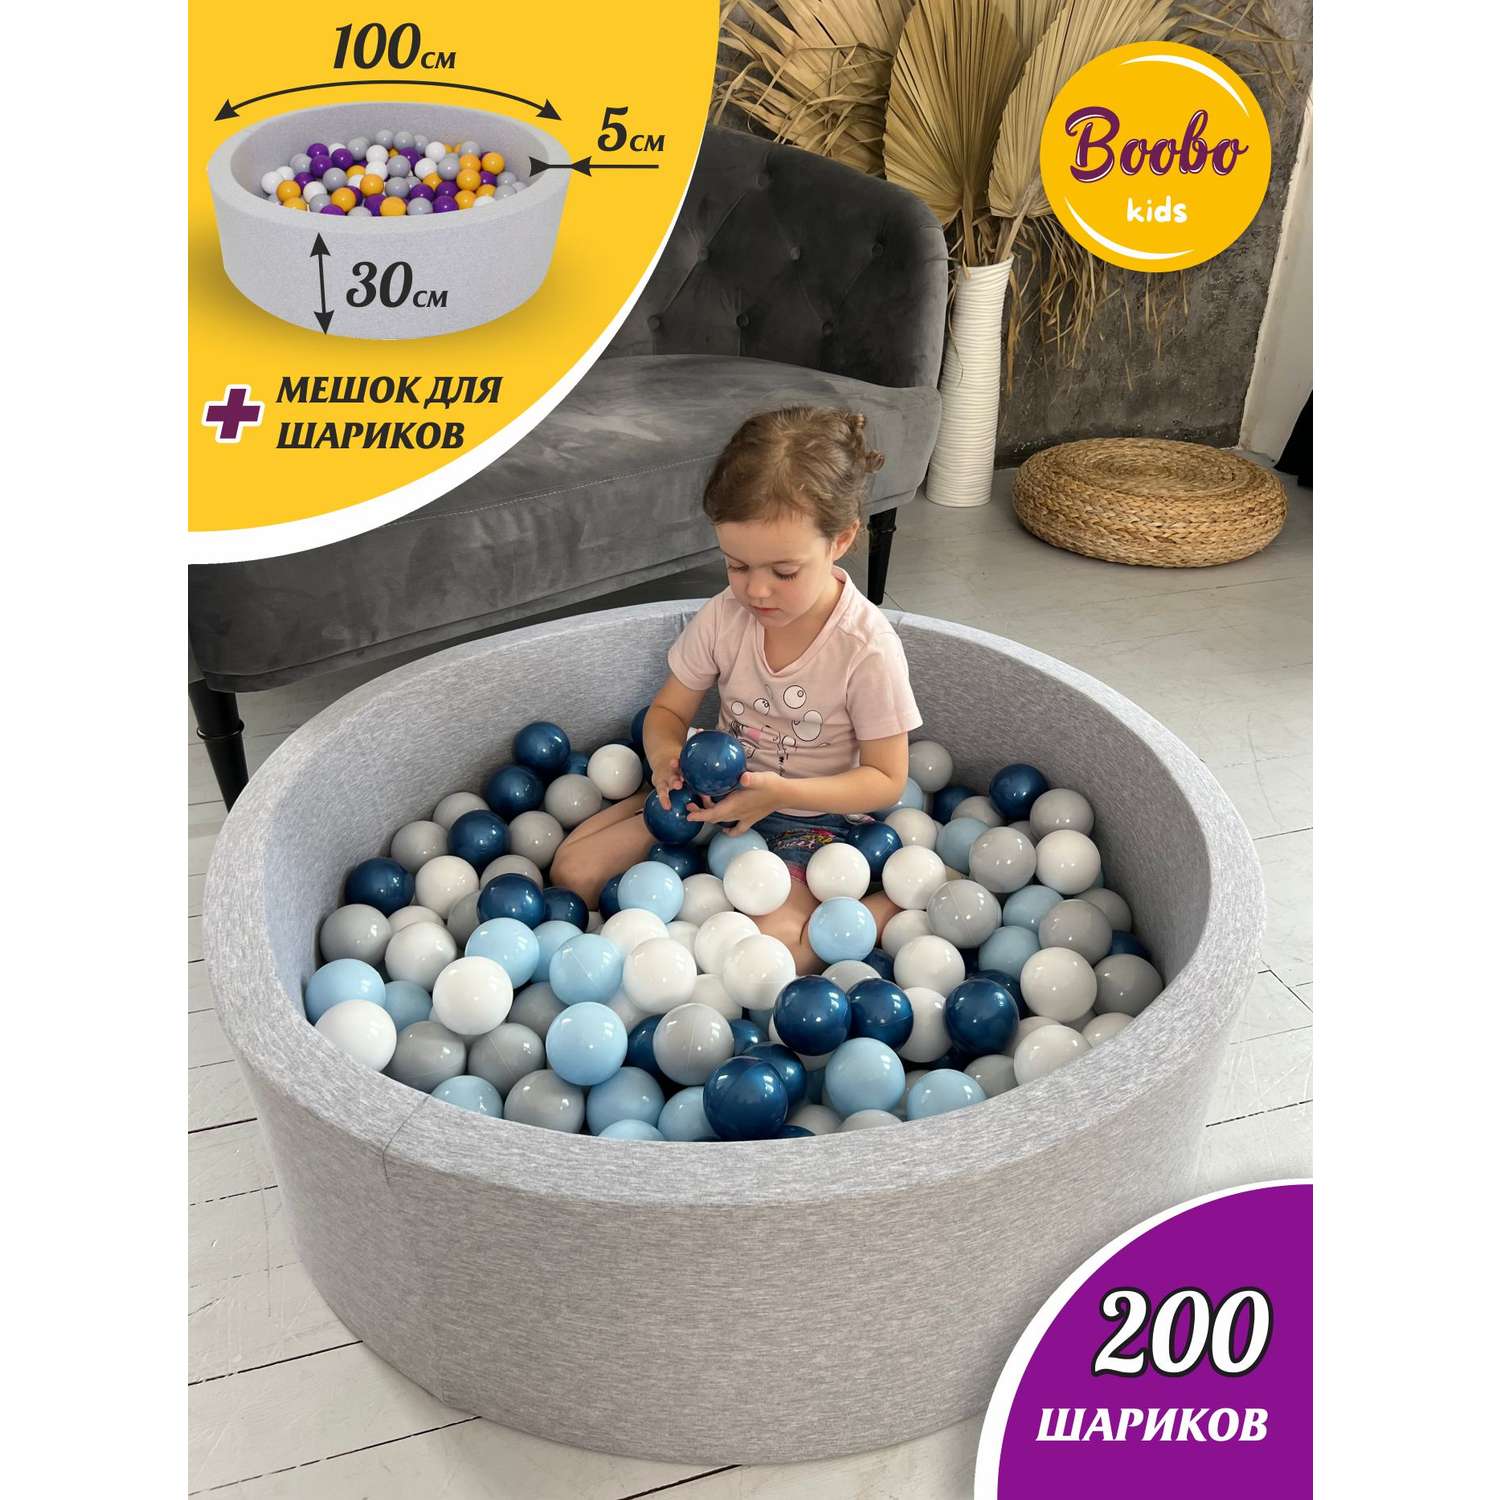 Сухой бассейн Boobo.kids 100х30 см 200 шаров серый+синий металлик - фото 1